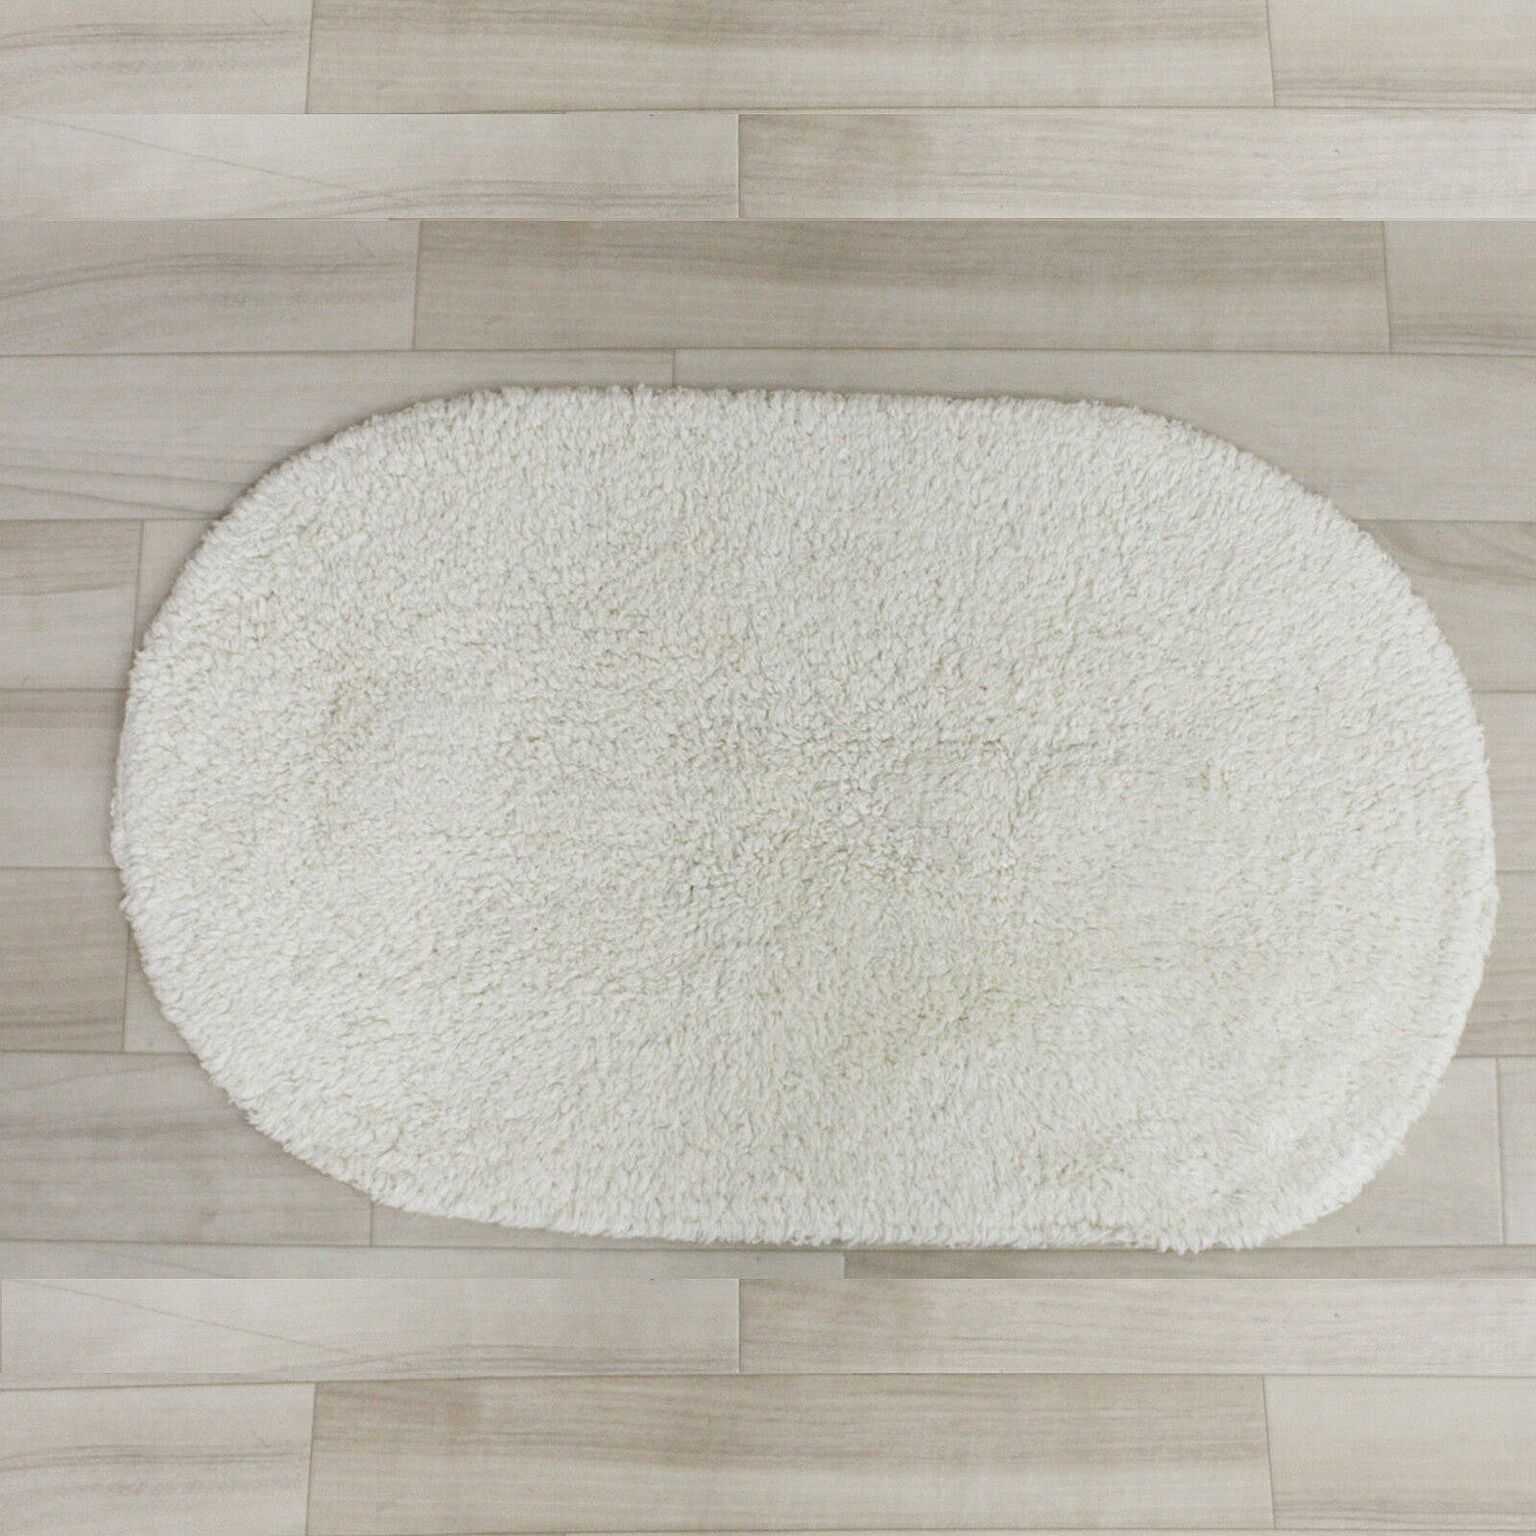 バスマット インド綿 マット 約45×75cm 楕円形 (Y) 玄関マット キッチンマット タオル素材 コットン100% ウォッシャブル 肌にやさしい かわいい 吸水 無地 シンプル 引っ越し 新生活